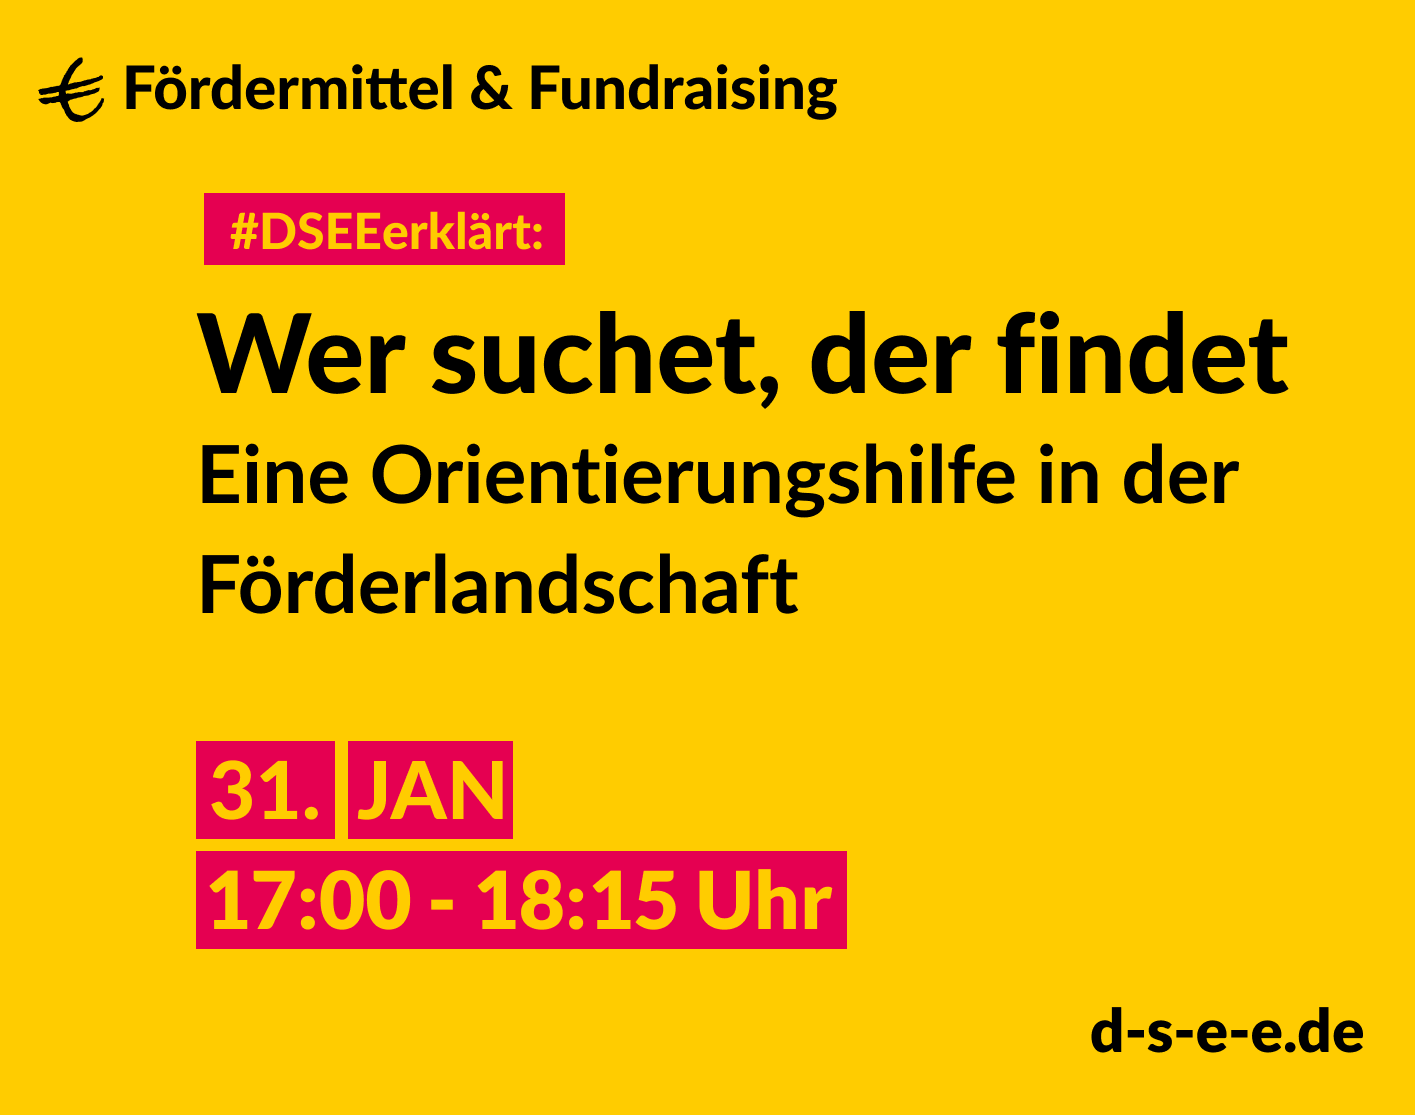 Fördermittel & Fundraising #DSEEerklärt: Wer suchen, der findet. Eine Orientierungshilfe in der Förderlandschaft. 31. Jan. 17:00-18:15 Uhr